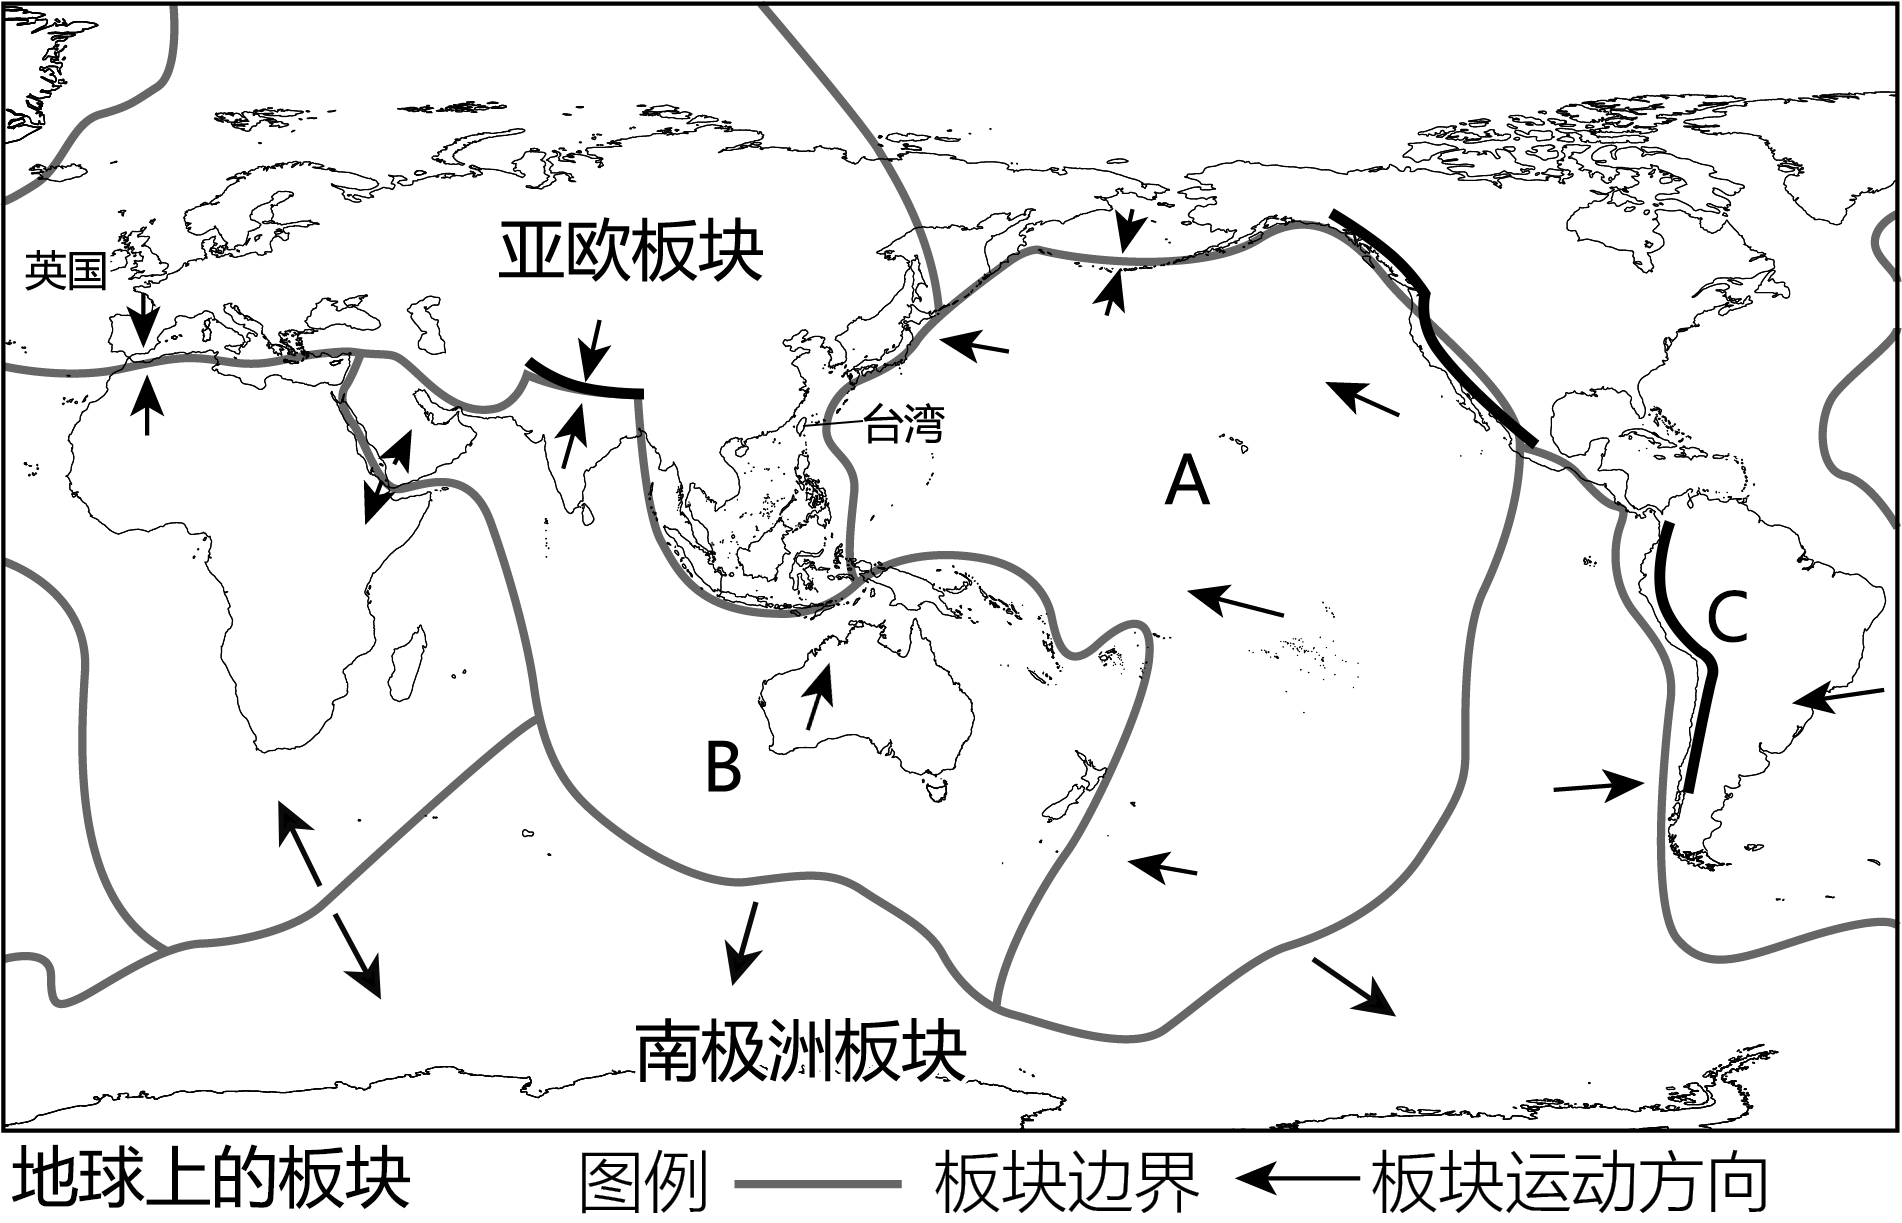 台湾花莲县海域24日早连续发生两次地震 - 2022年3月24日, 俄罗斯卫星通讯社